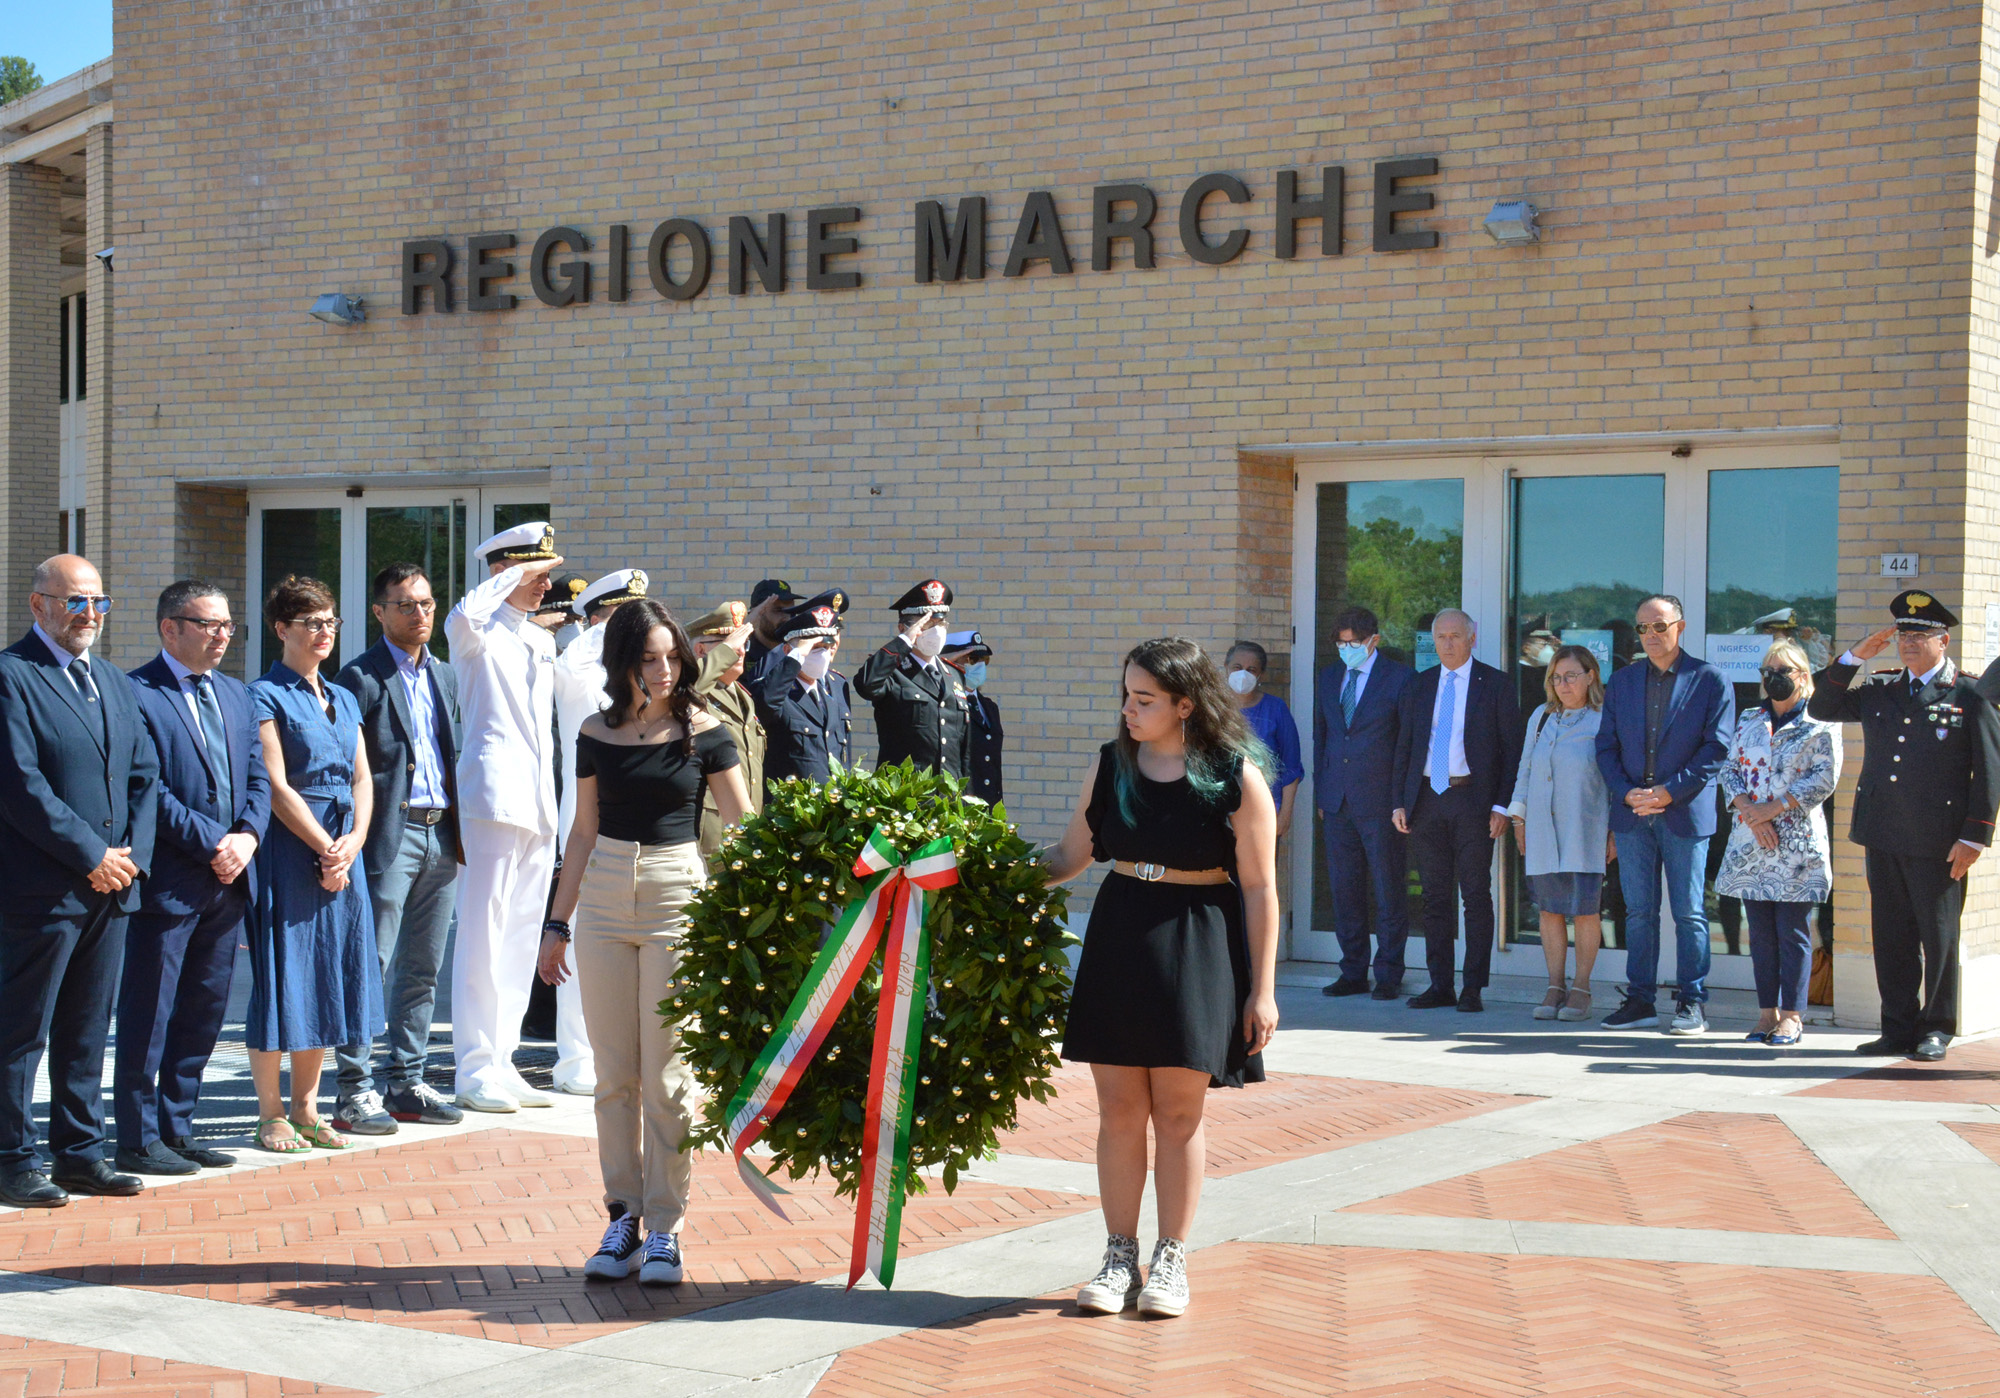 Regione Marche, commemorati Paolo Borsellino e la scorta